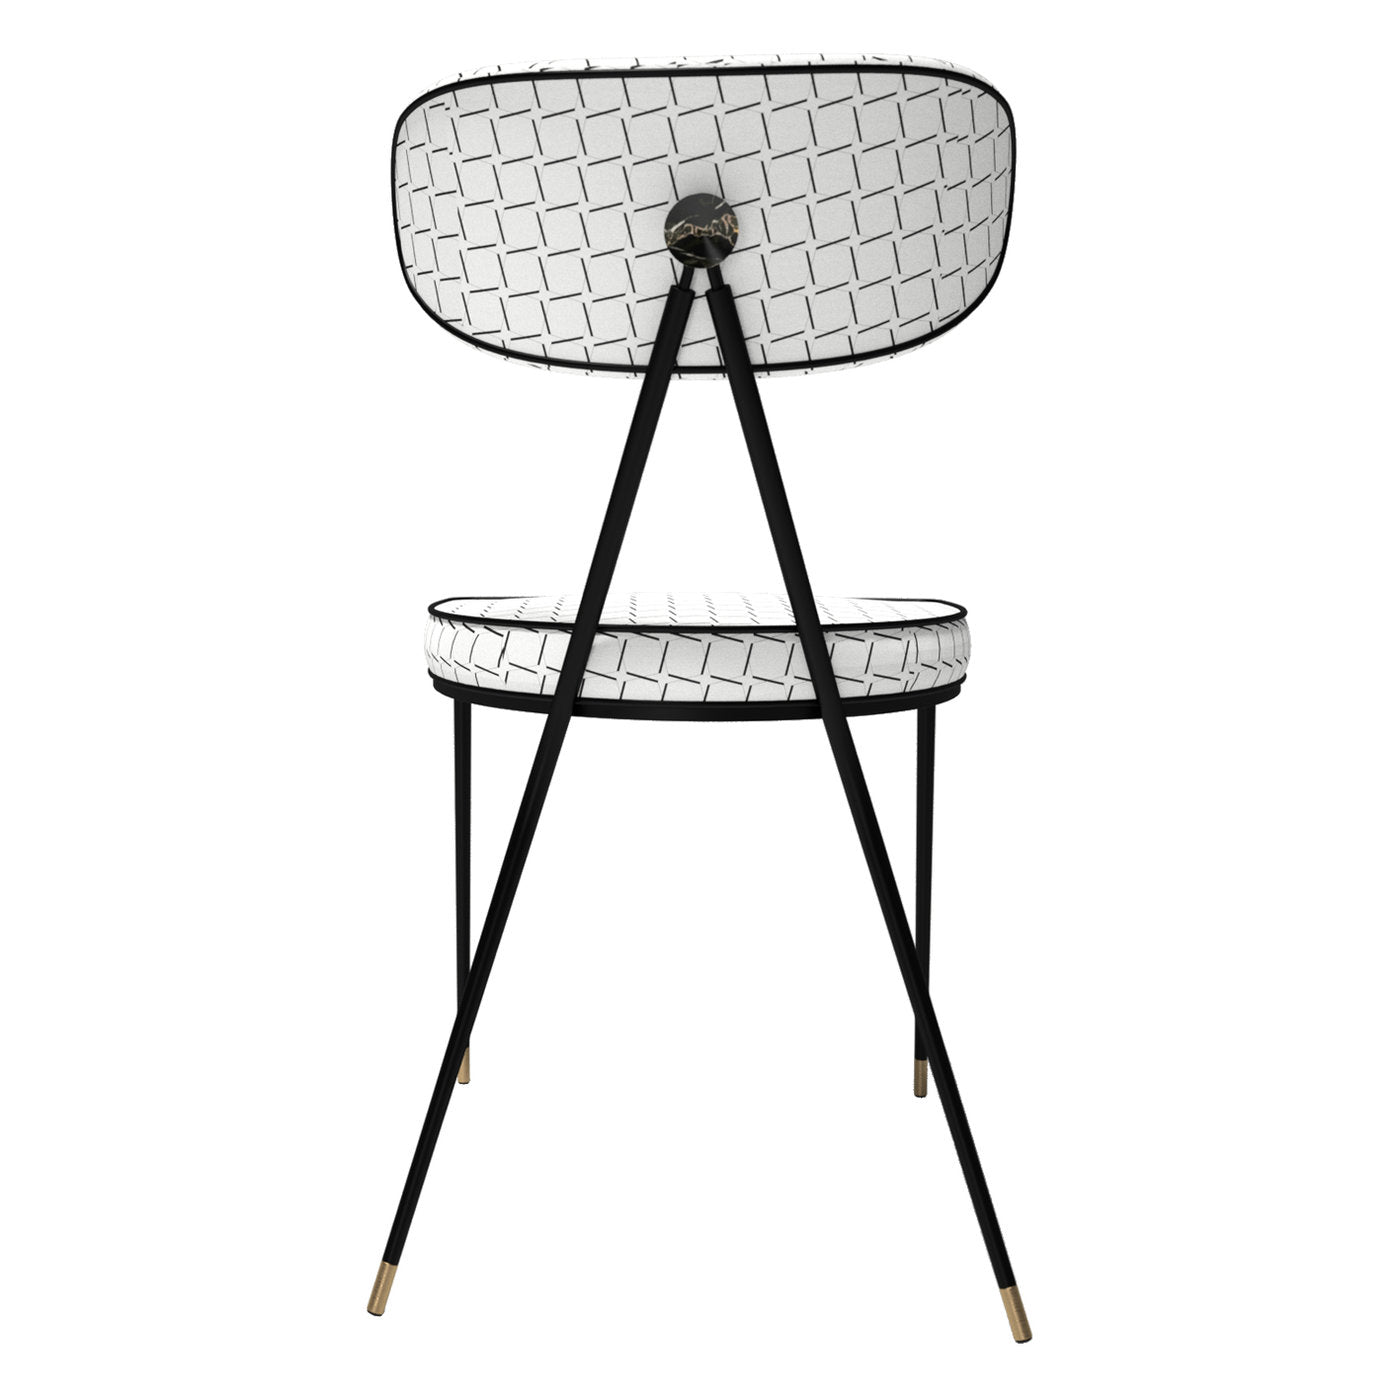 Classic 'Twist' Chair Objet - Alternative view 1